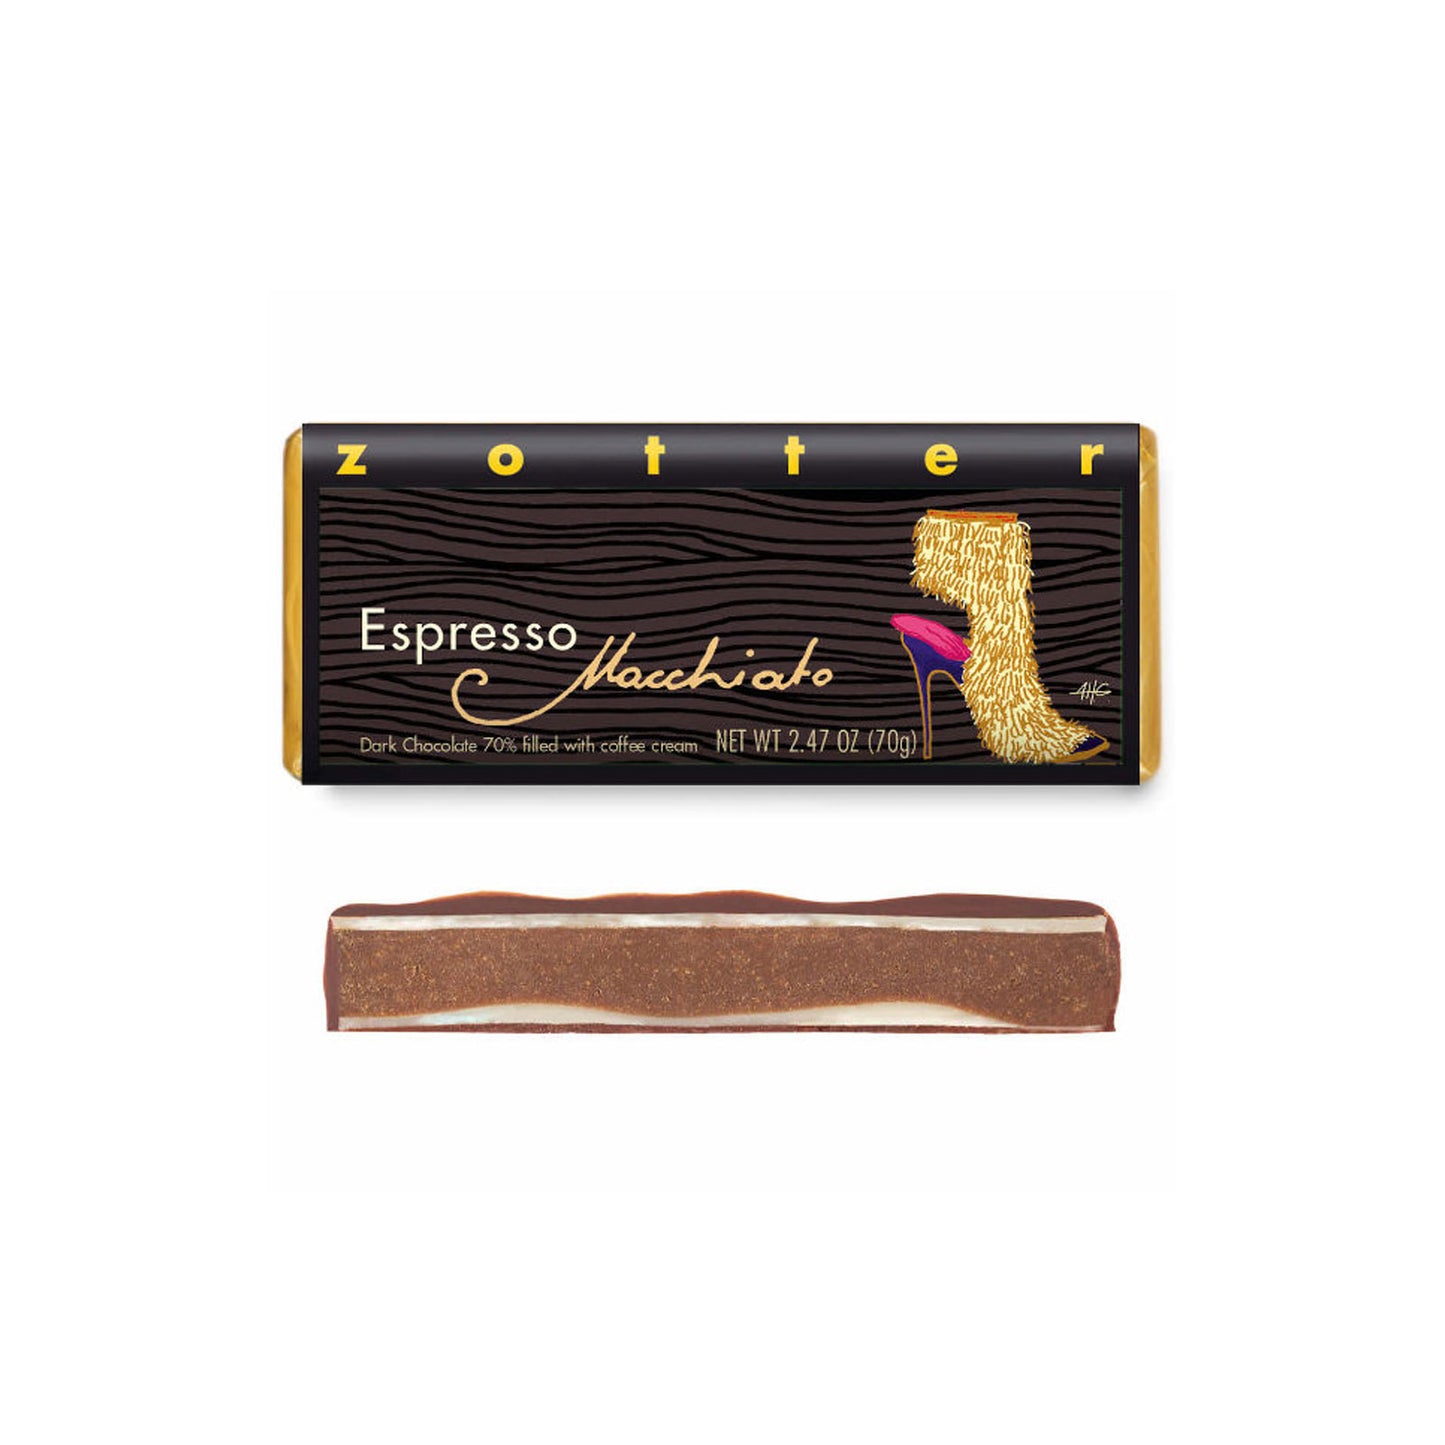 Espresso “Macchiato” | Hand-Scooped Chocolate Bar